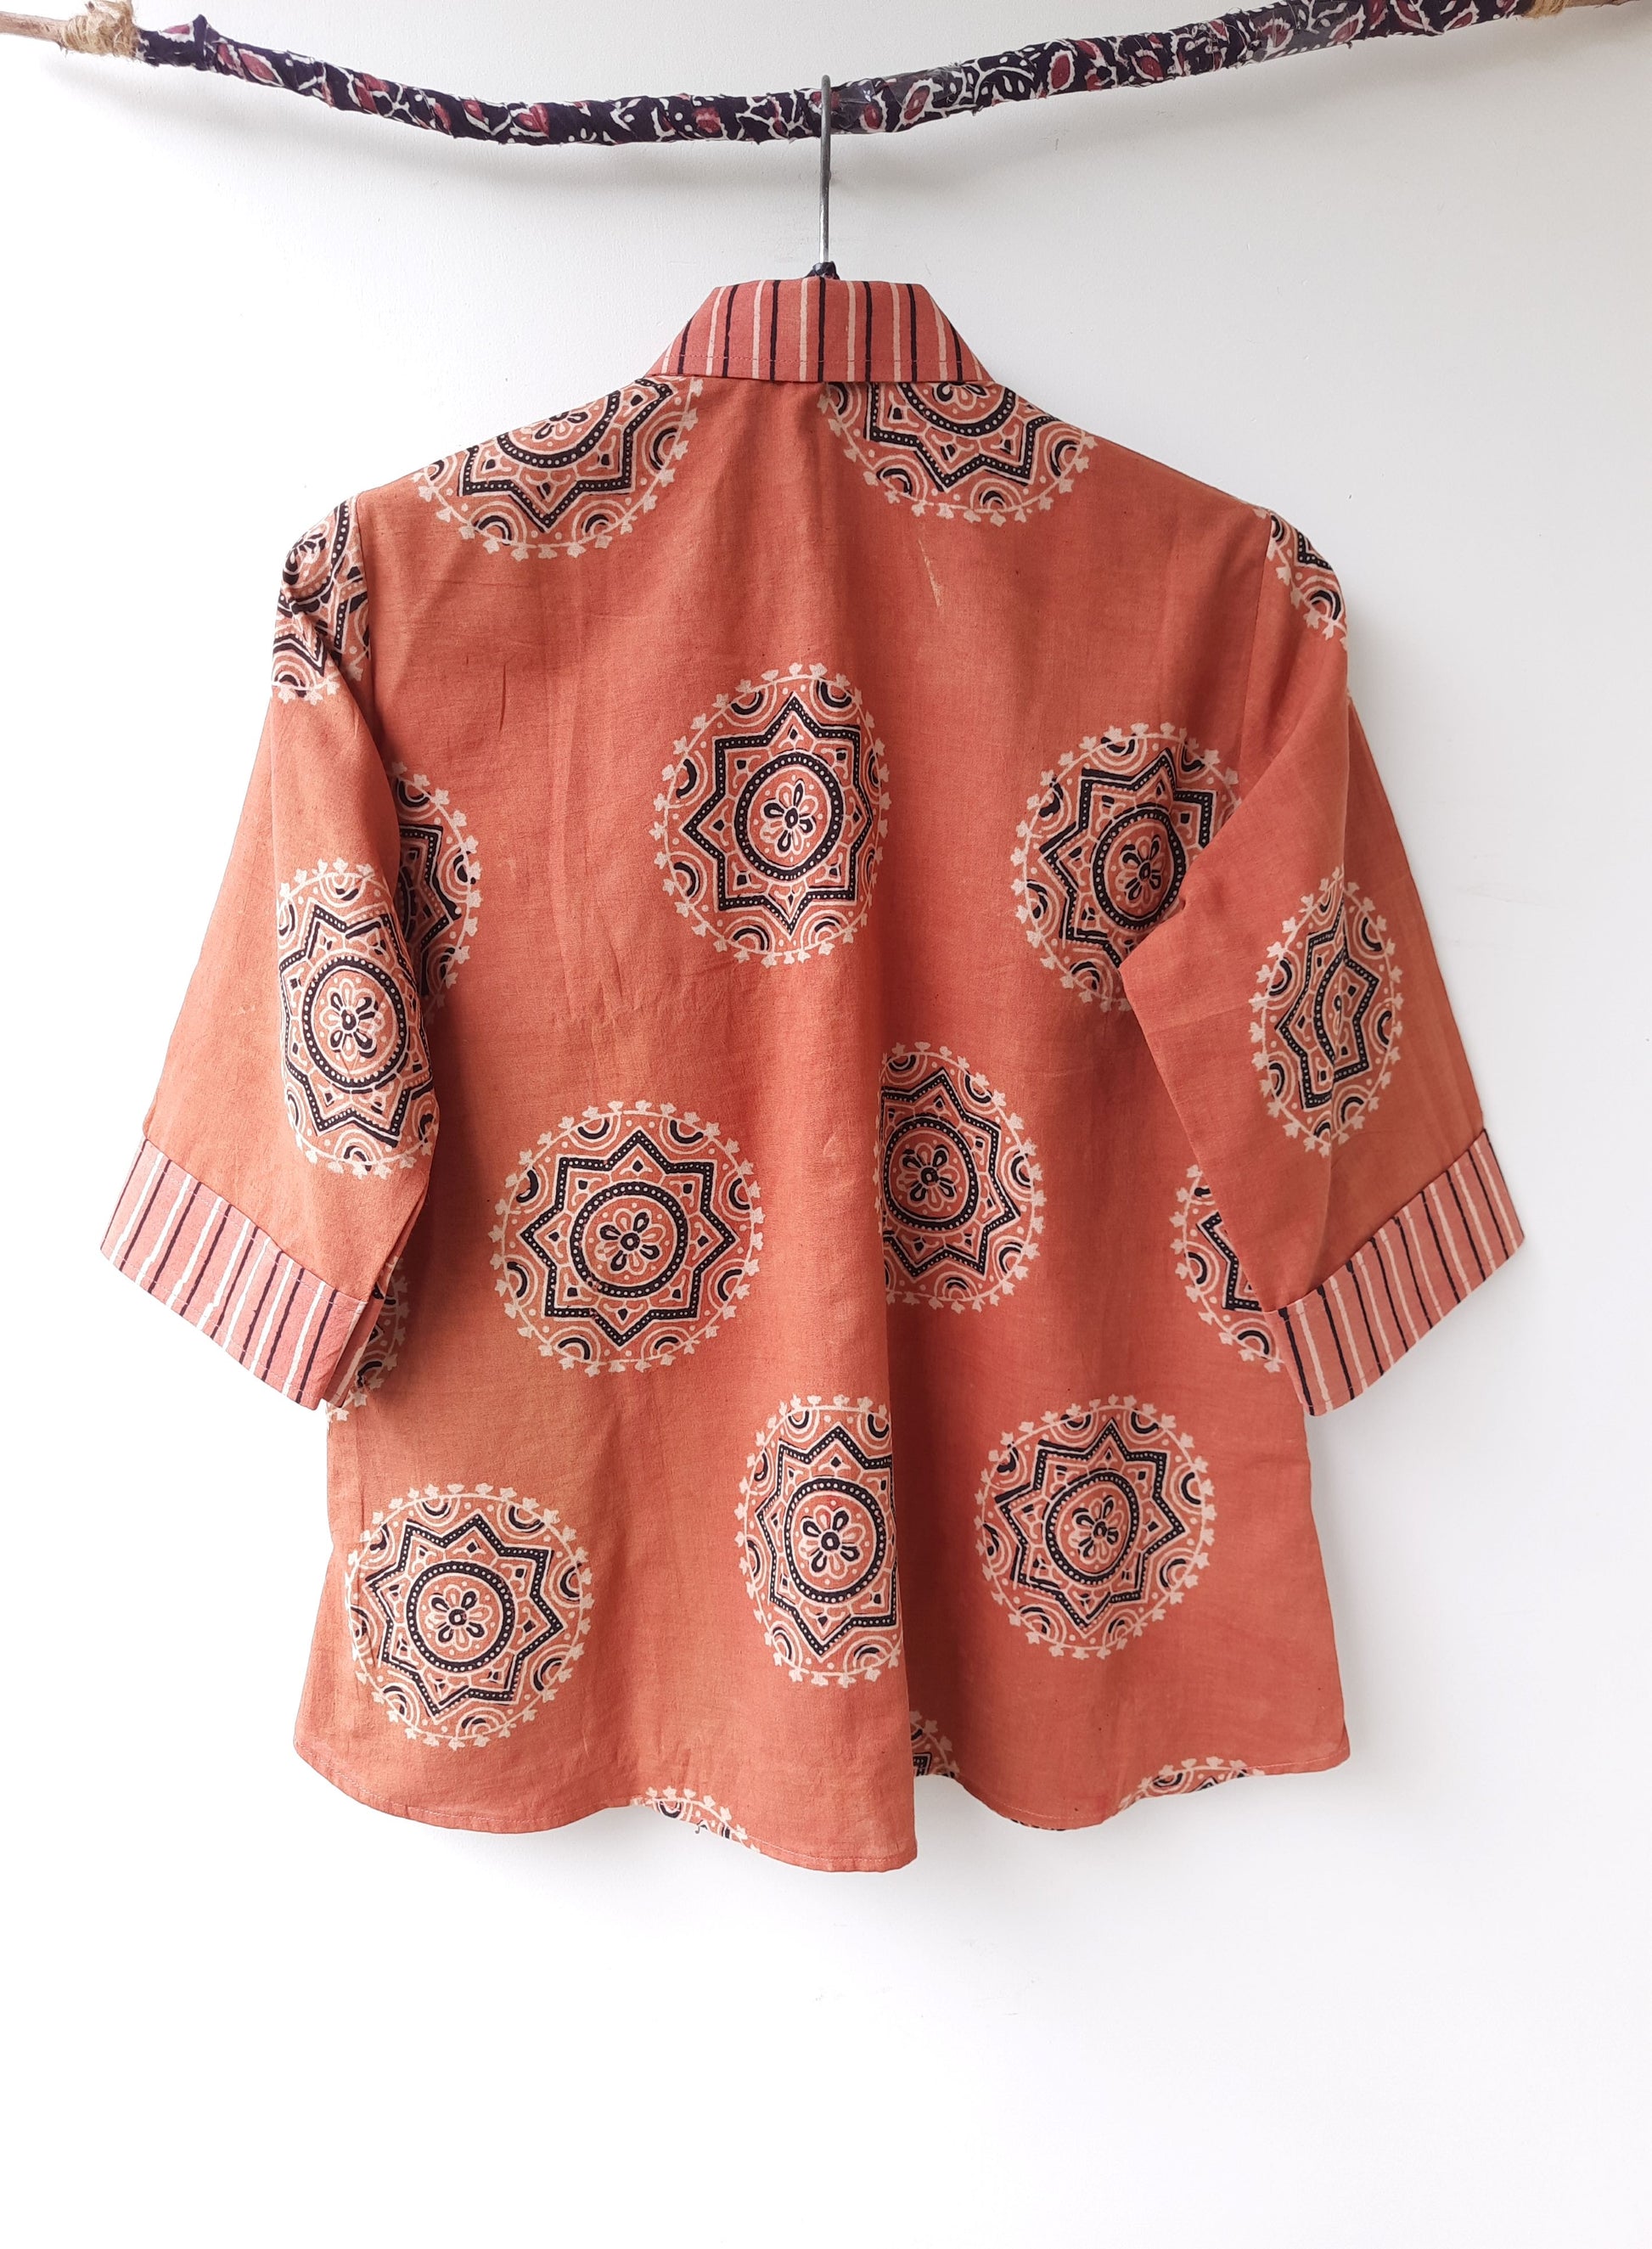 Natural dyed ajrakh prints women's shirt, Handmade ajrakh shirt, Ajrakh hand block print women's shirt, Slow fashion